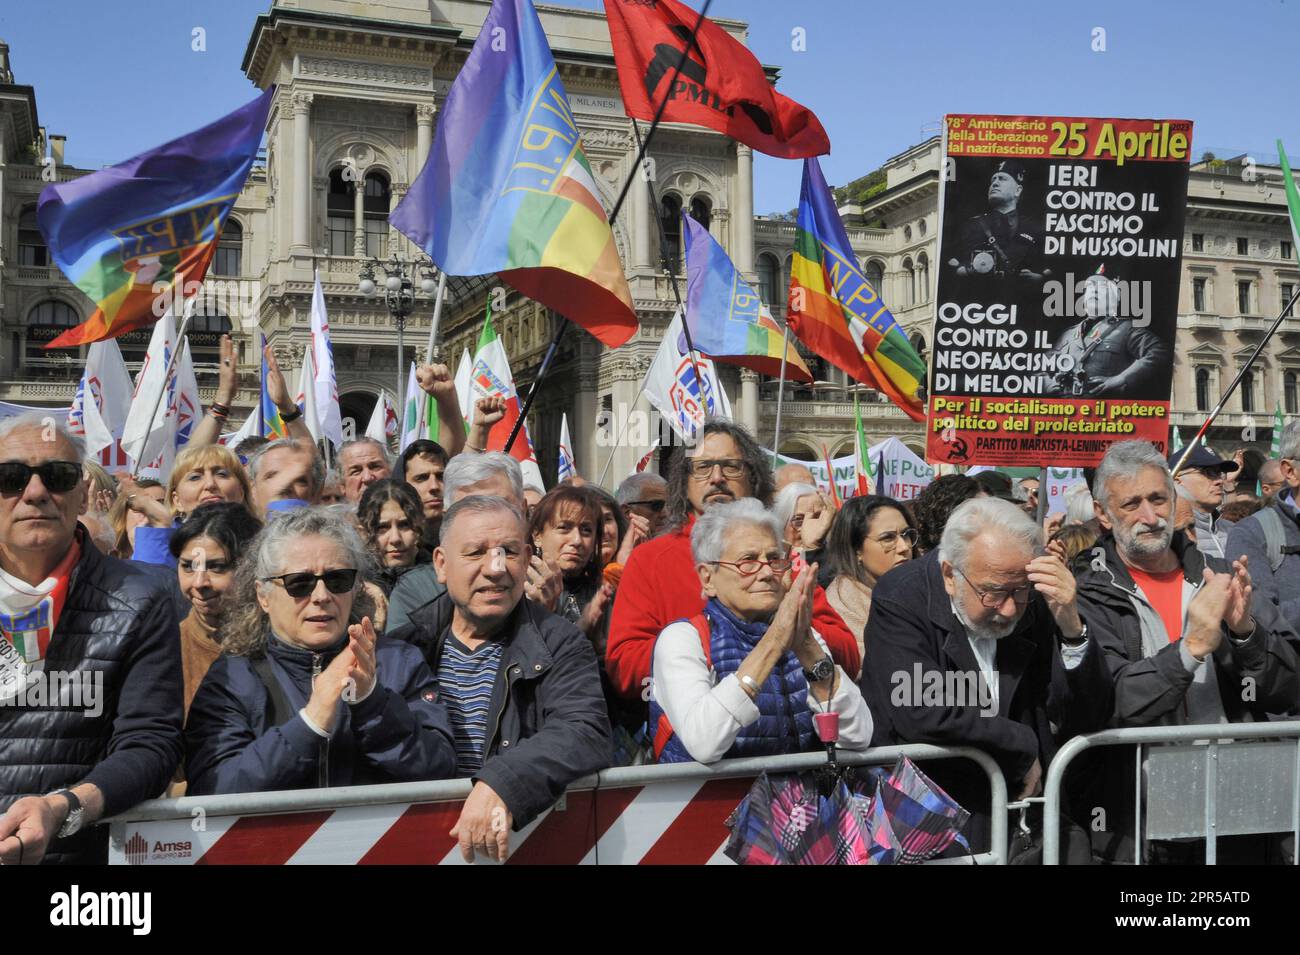 - Milan, demonstration of April 25, anniversary of Italy's Liberation from the nazifascism   - Milano, manifestazione del 25 aprile, anniversario della Liberazione dell'Italia dal nazifascismo Stock Photo